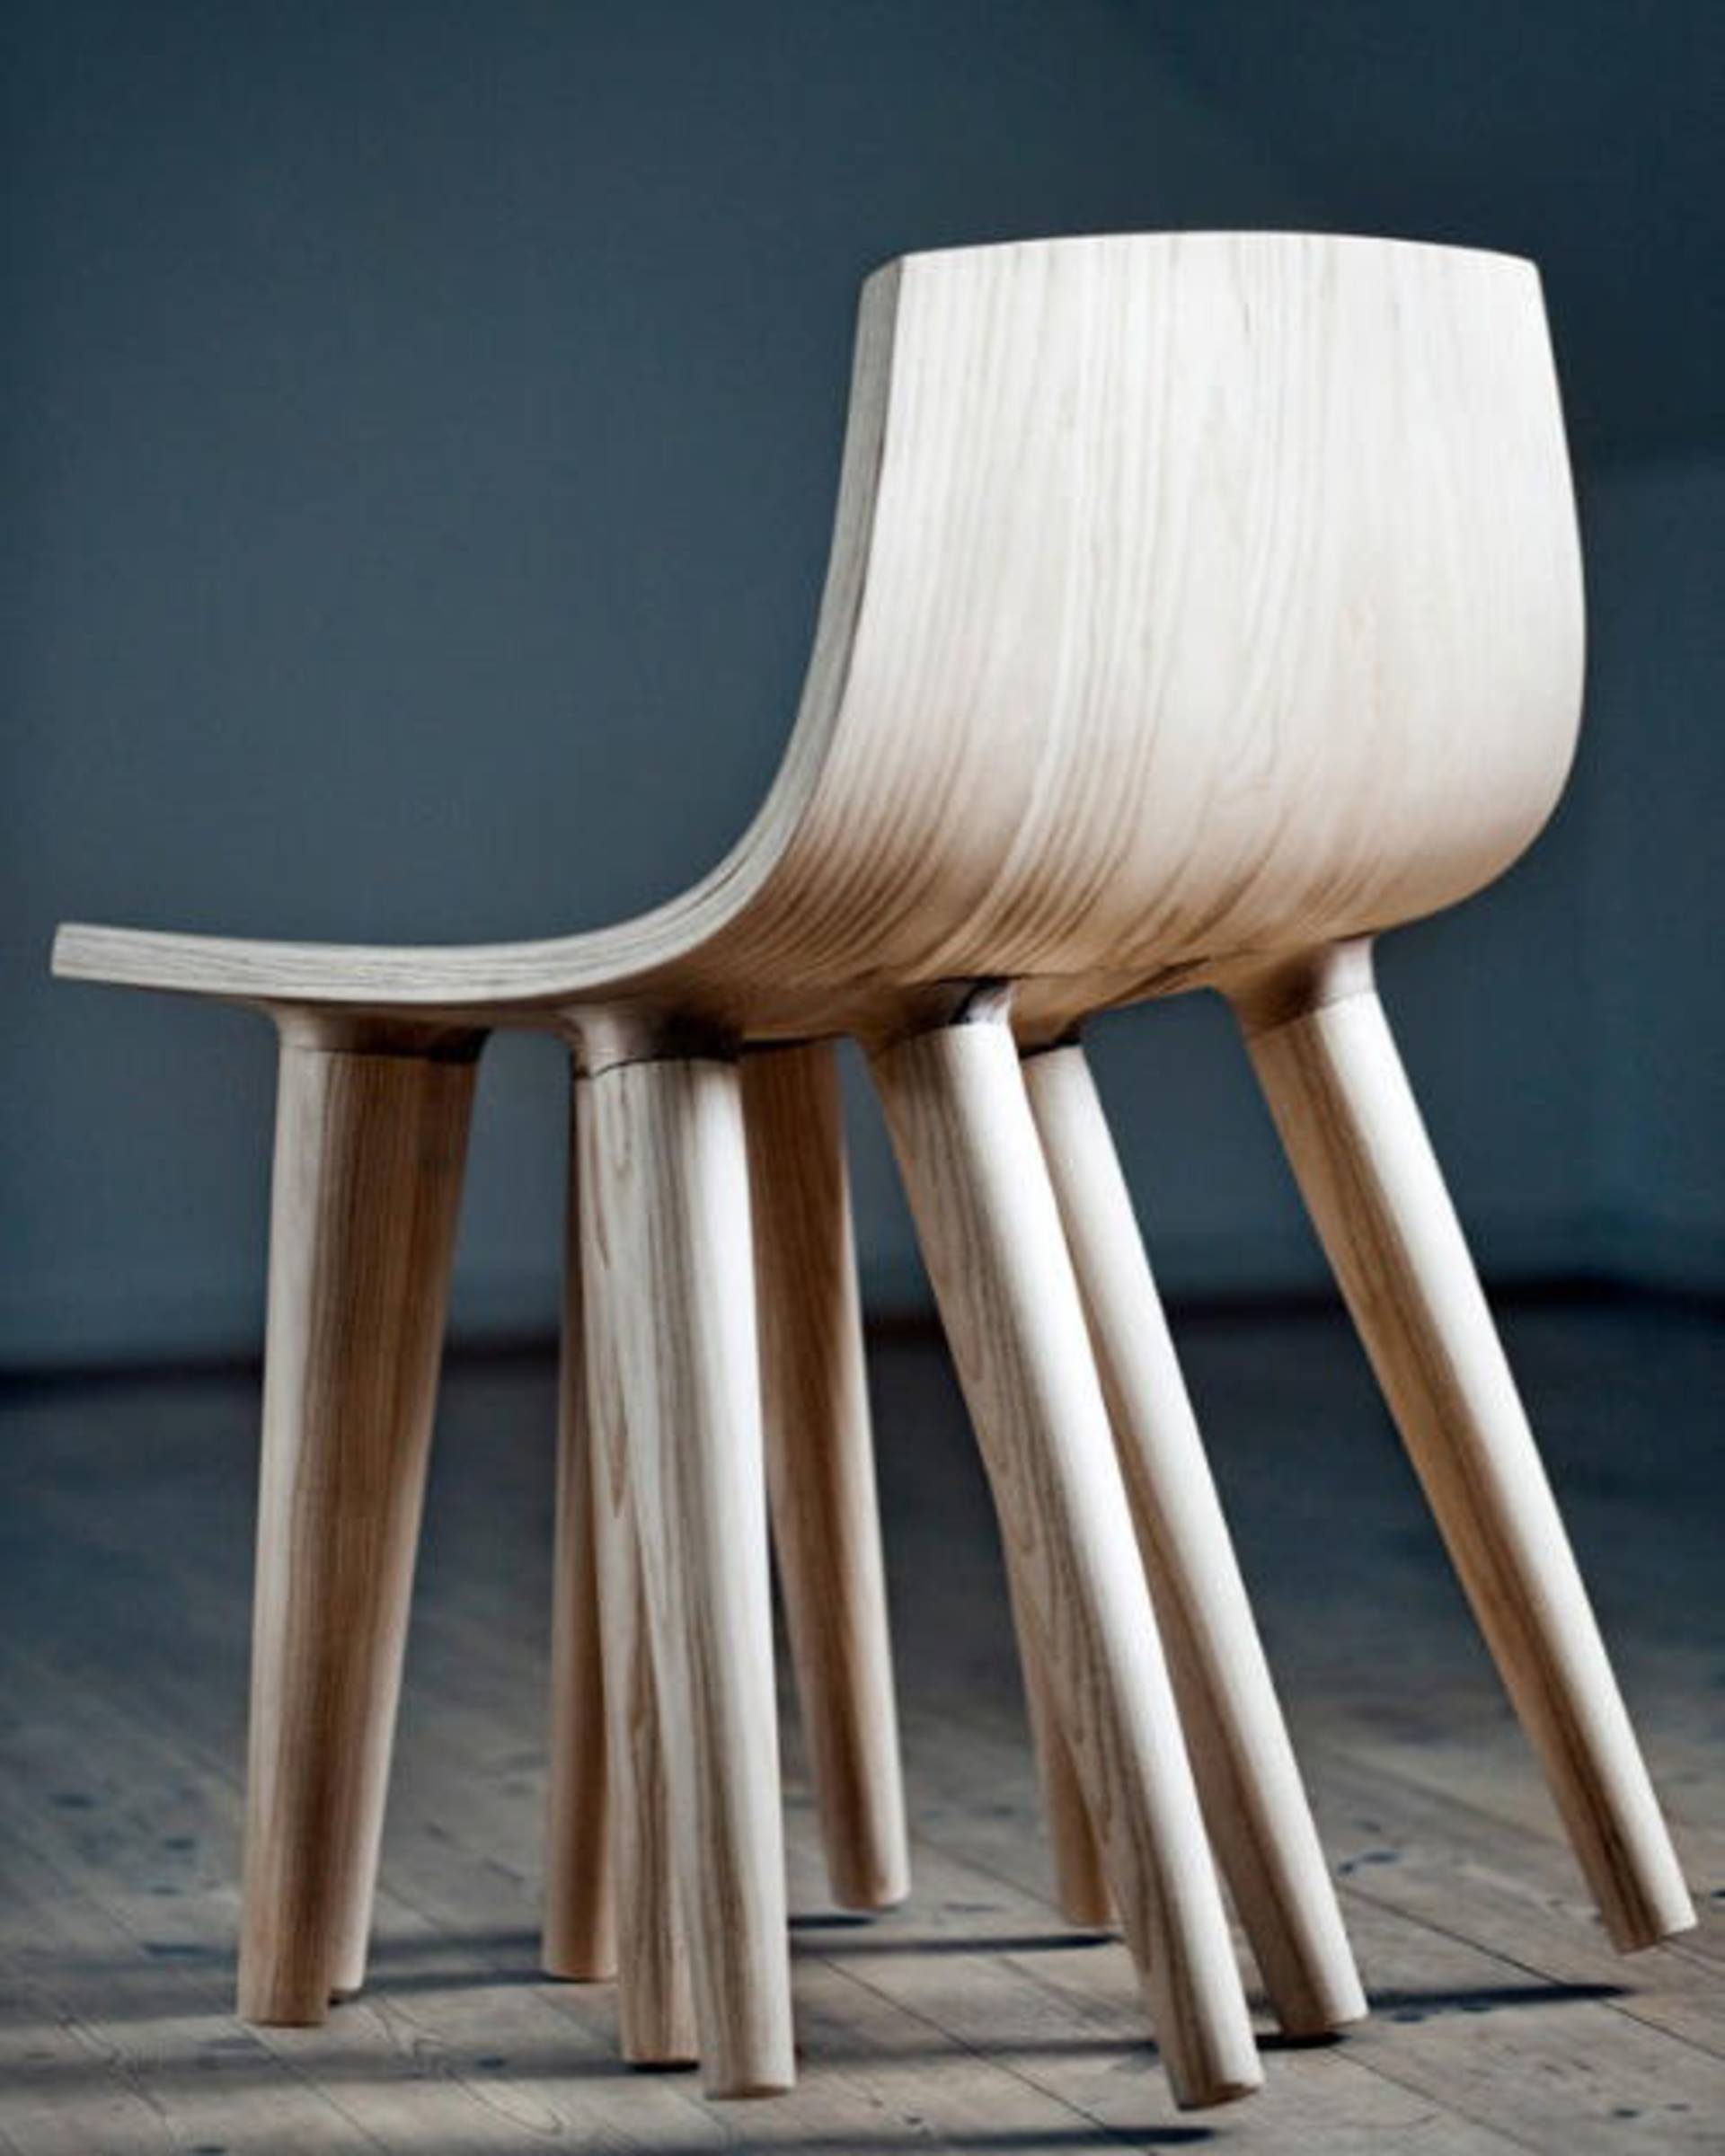 Chair legs. Дизайнерские стулья. Необычные дизайнерские стулья. Дизайнерские стулья из дерева. Дизайнерский табурет из дерева.